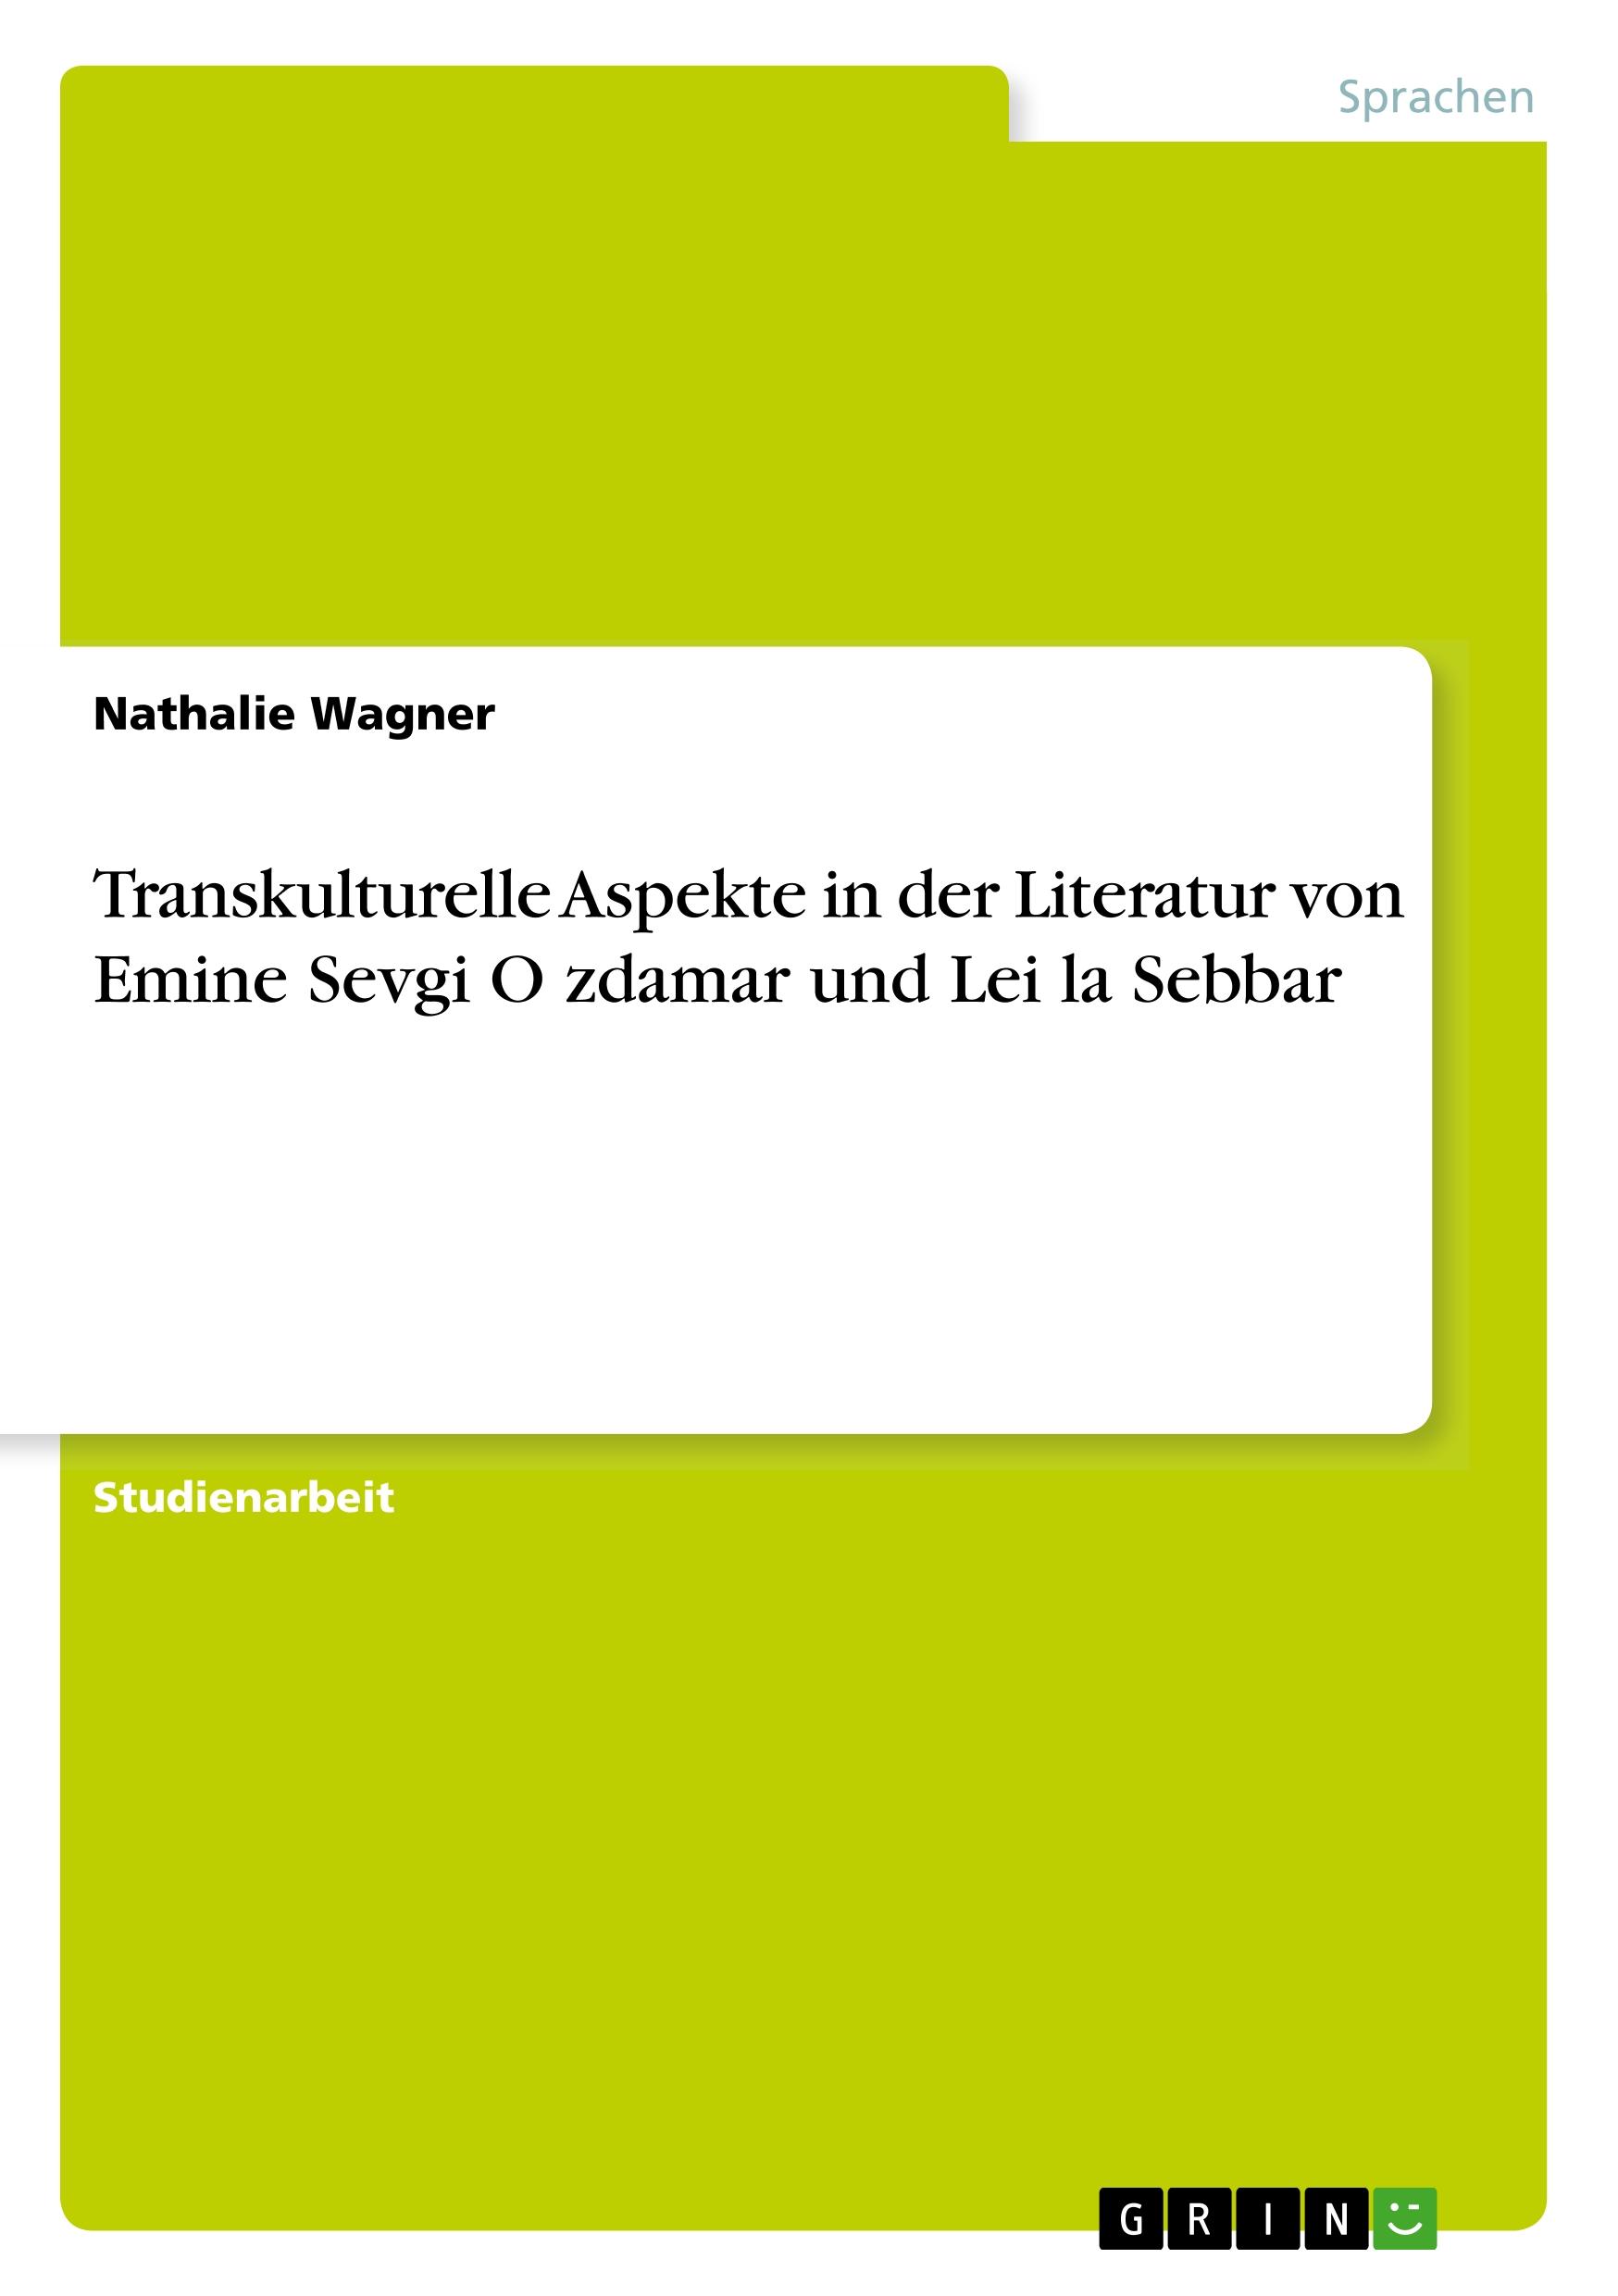 Transkulturelle Aspekte in der Literatur von Emine Sevgi Oezdamar und Leïla Sebbar - Wagner, Nathalie